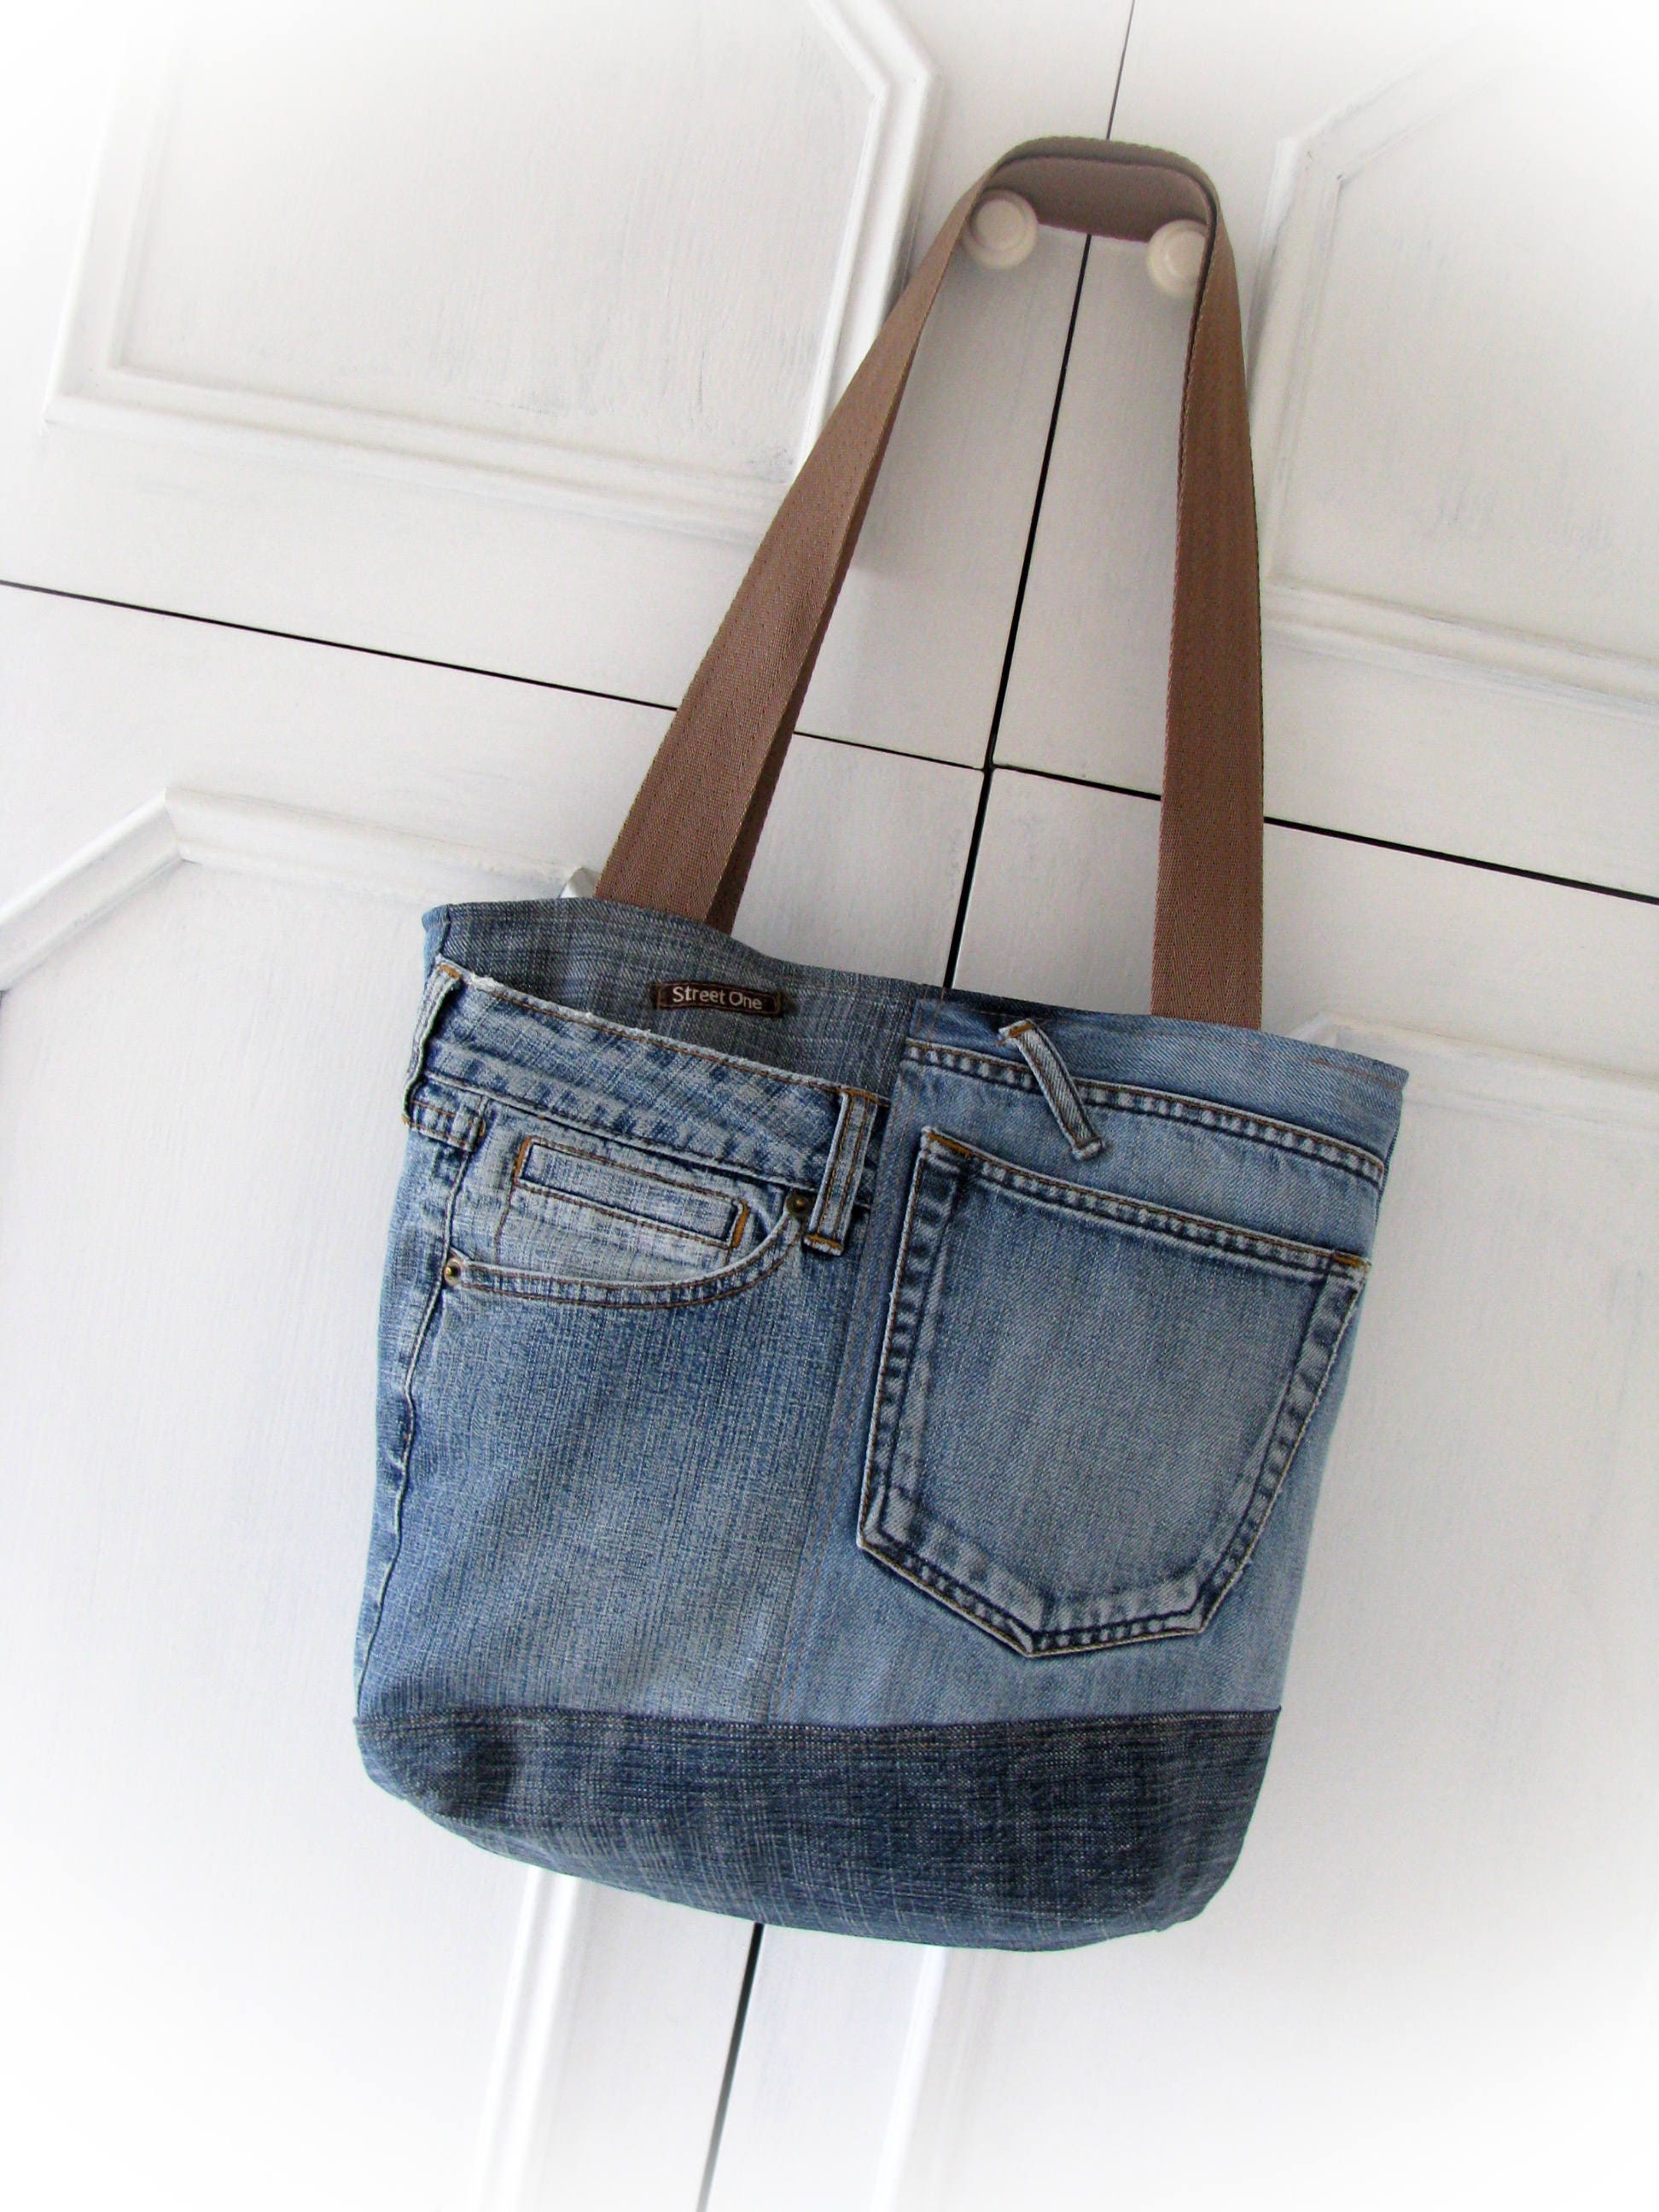 Denim bag Jeans bag Patchwork bag Handmade bag Recycled jeans